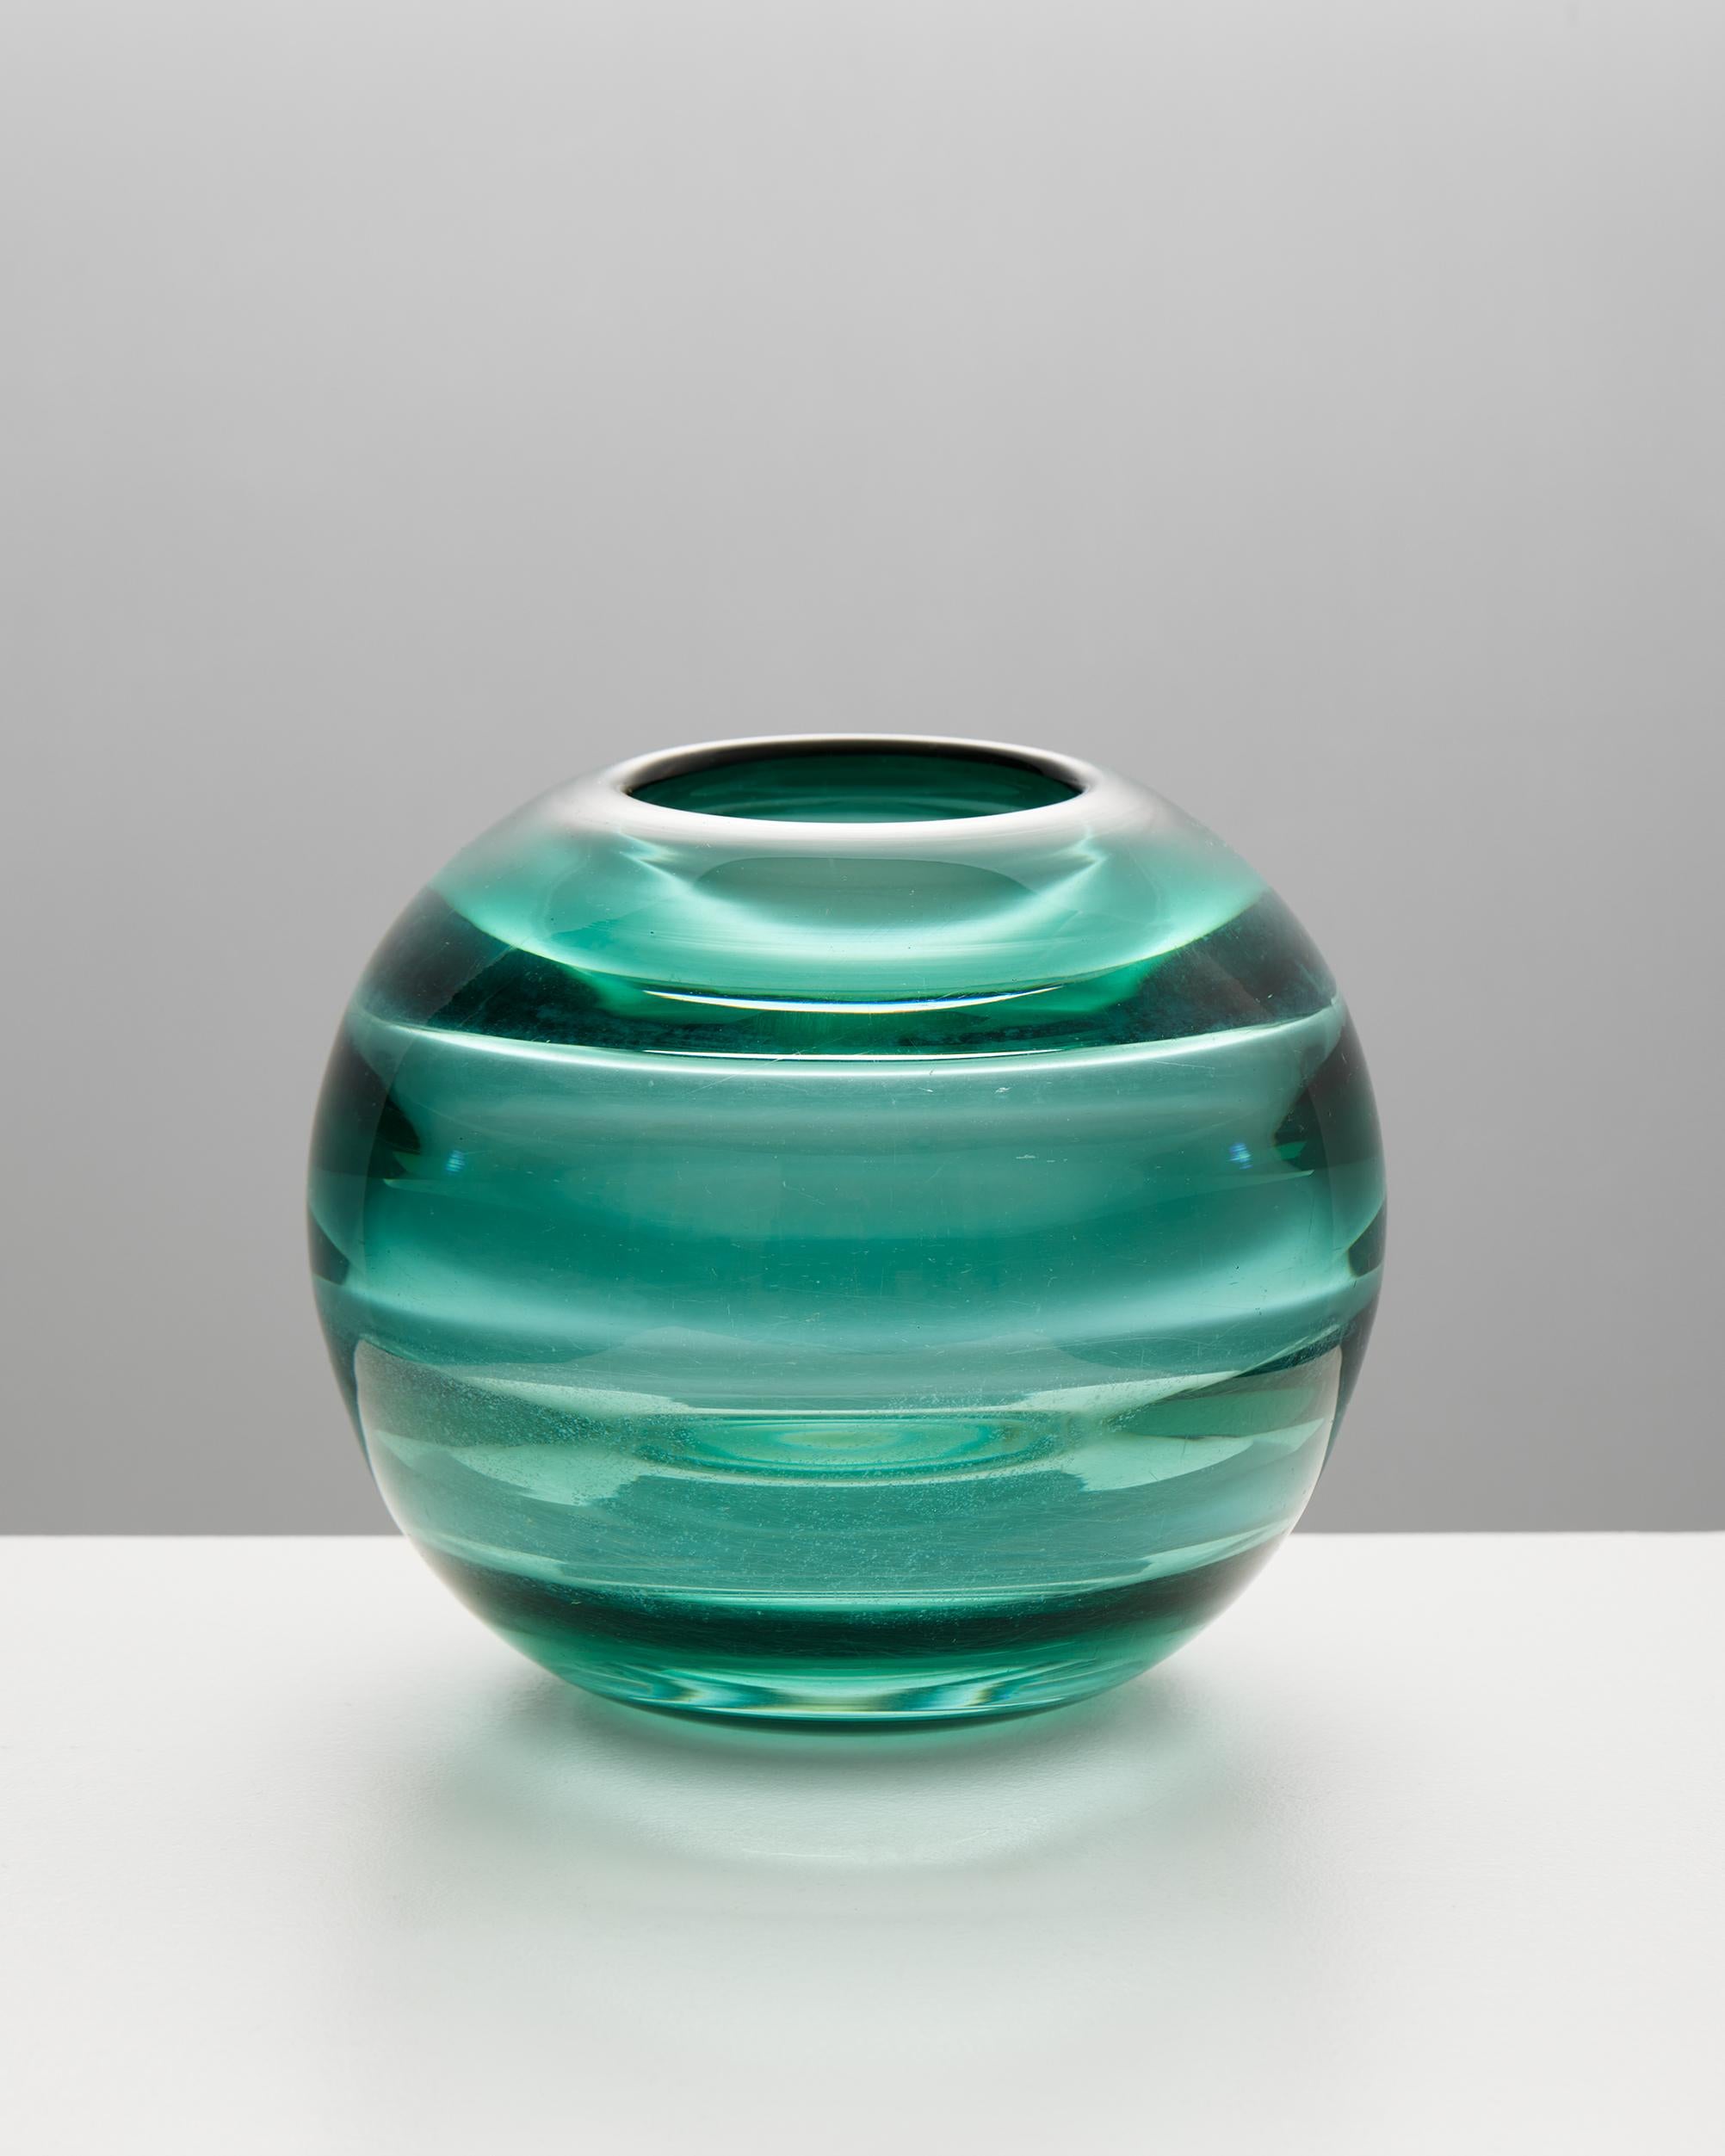 Vase designed by Edward Hald for Orrefors, Sweden, 1930s
Signed.

Glass

H: 14 cm / 5 1/2''
Diameter: 16 cm / 6 1/4''